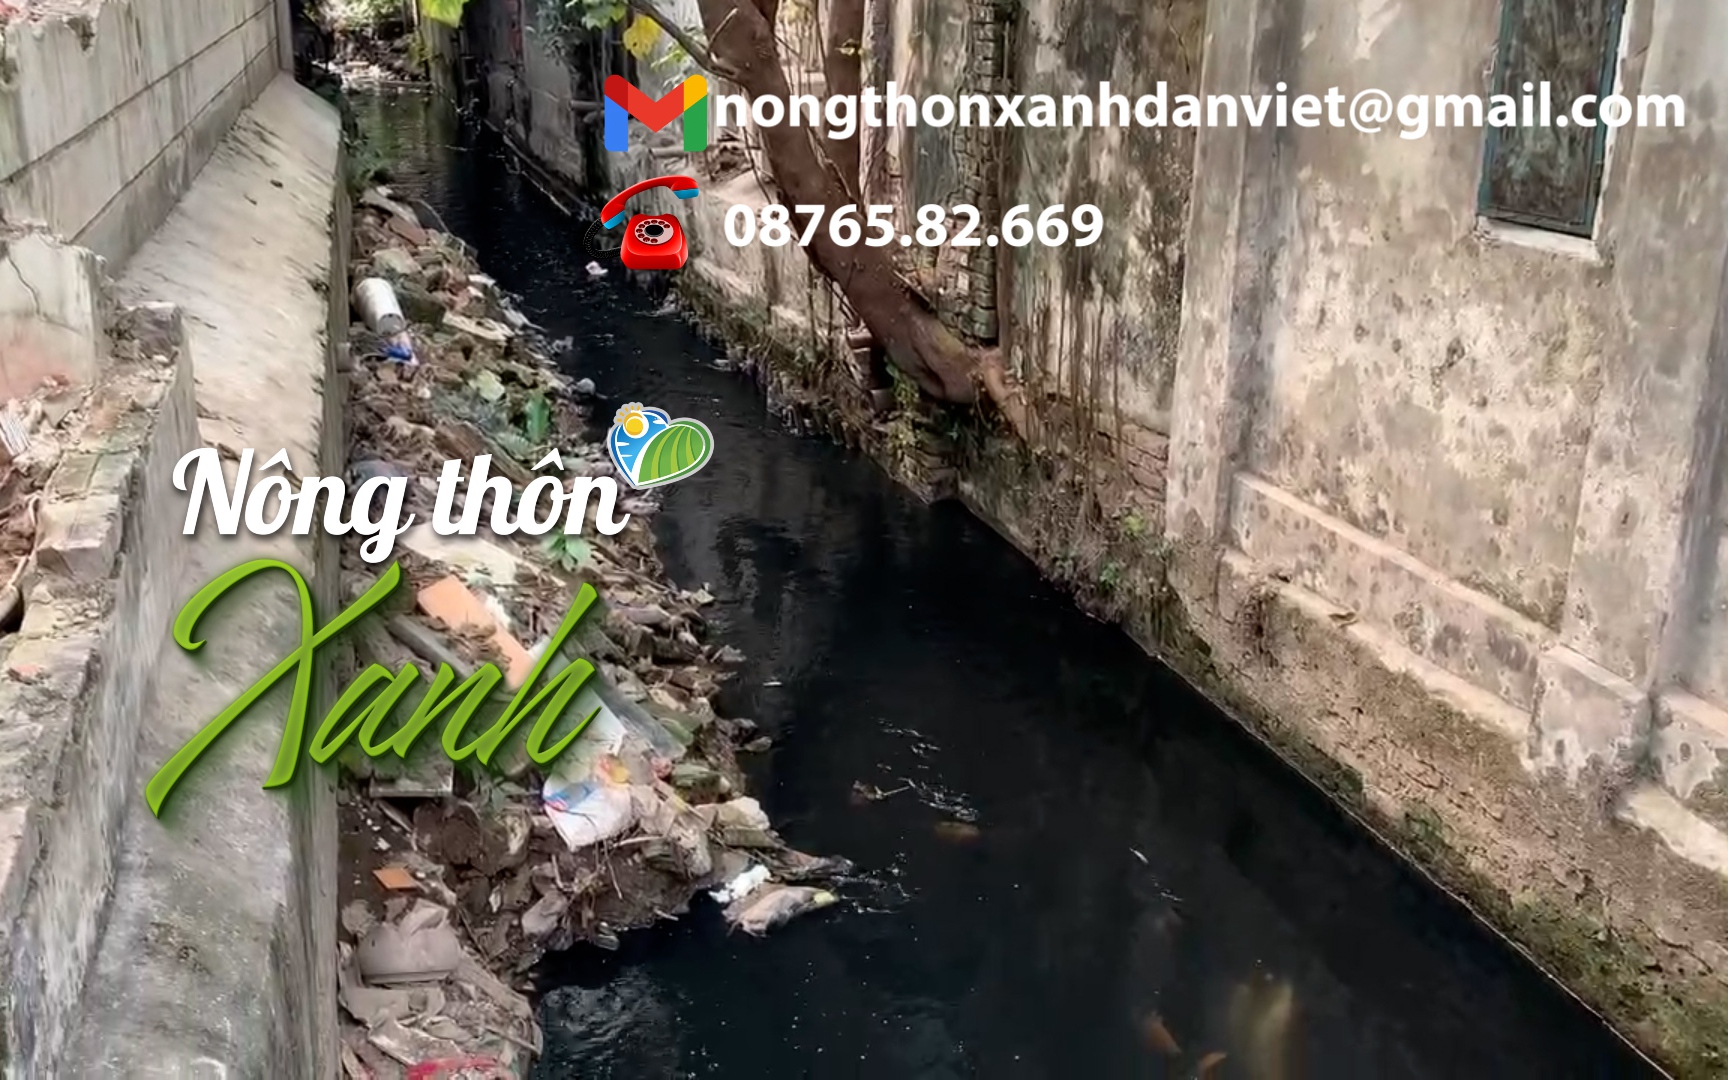 HỘP THƯ NÔNG THÔN XANH: Người dân Thủ đô sống khổ bên dự án cải tạo mương nước ô nhiễm